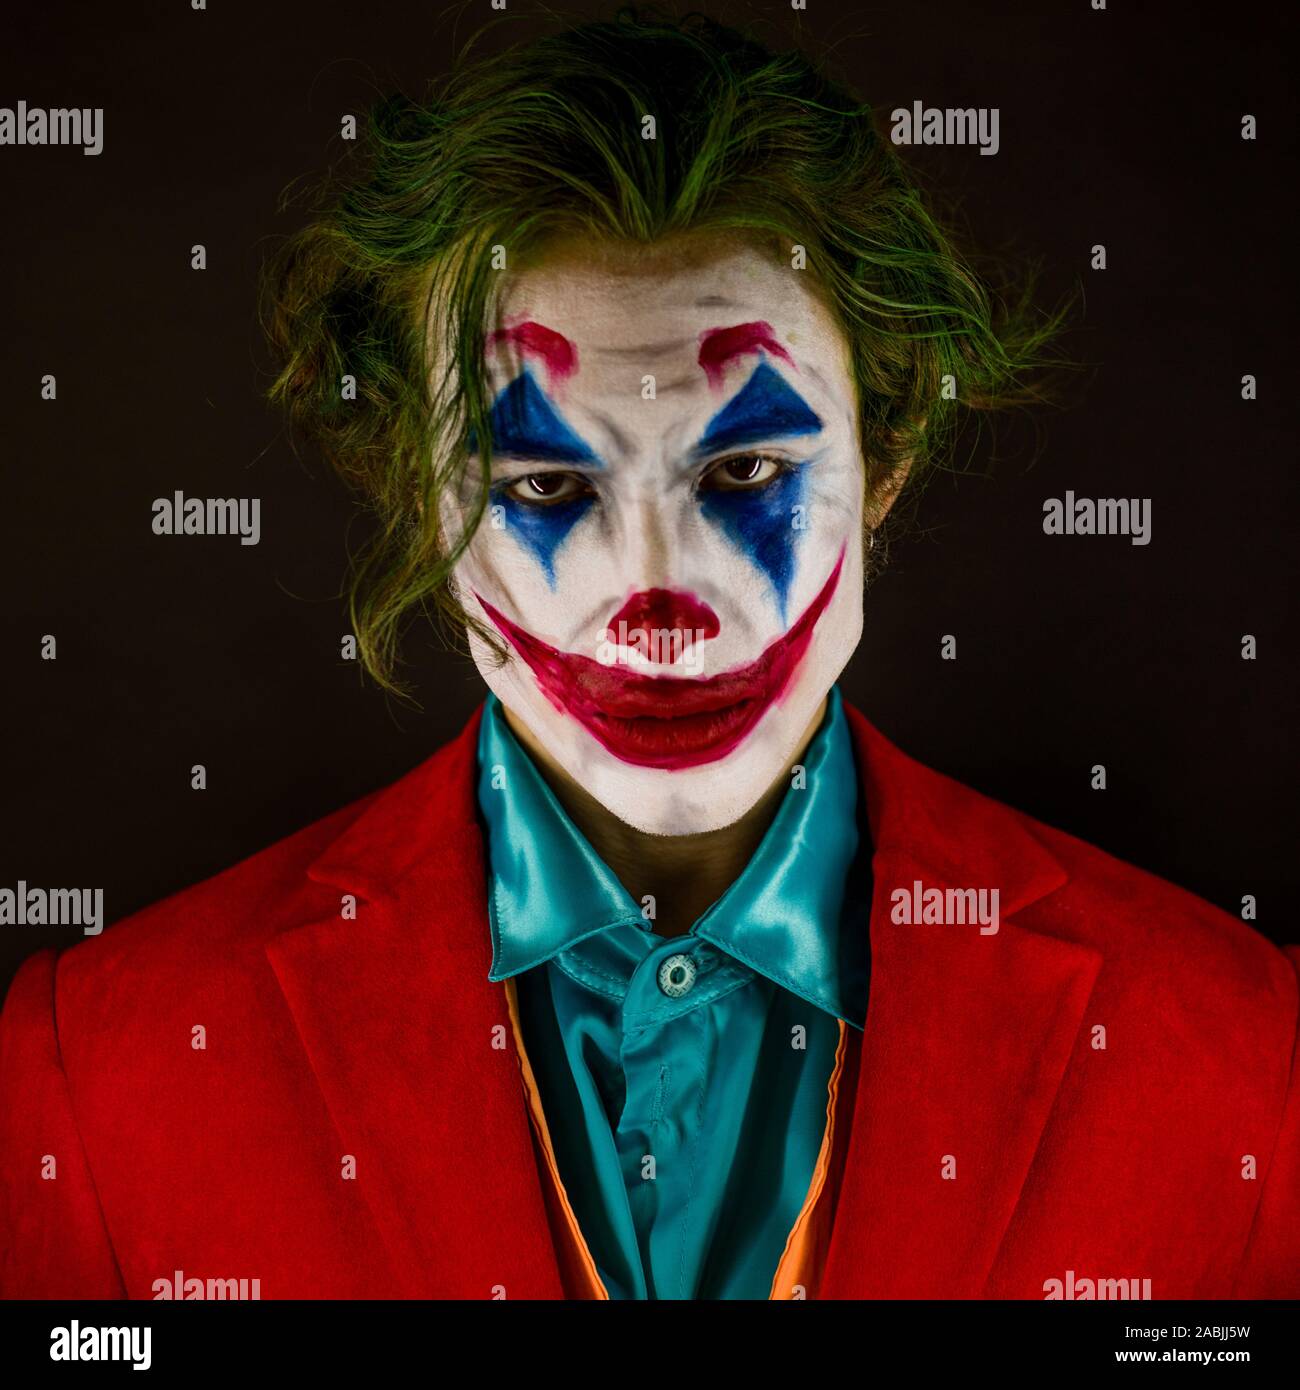 astronomía áspero Instalaciones Hombre suplantando al Joker. Retrato de un hombre con un traje de payaso  con maquillaje y cabello verde. Joker cosplay Fotografía de stock - Alamy